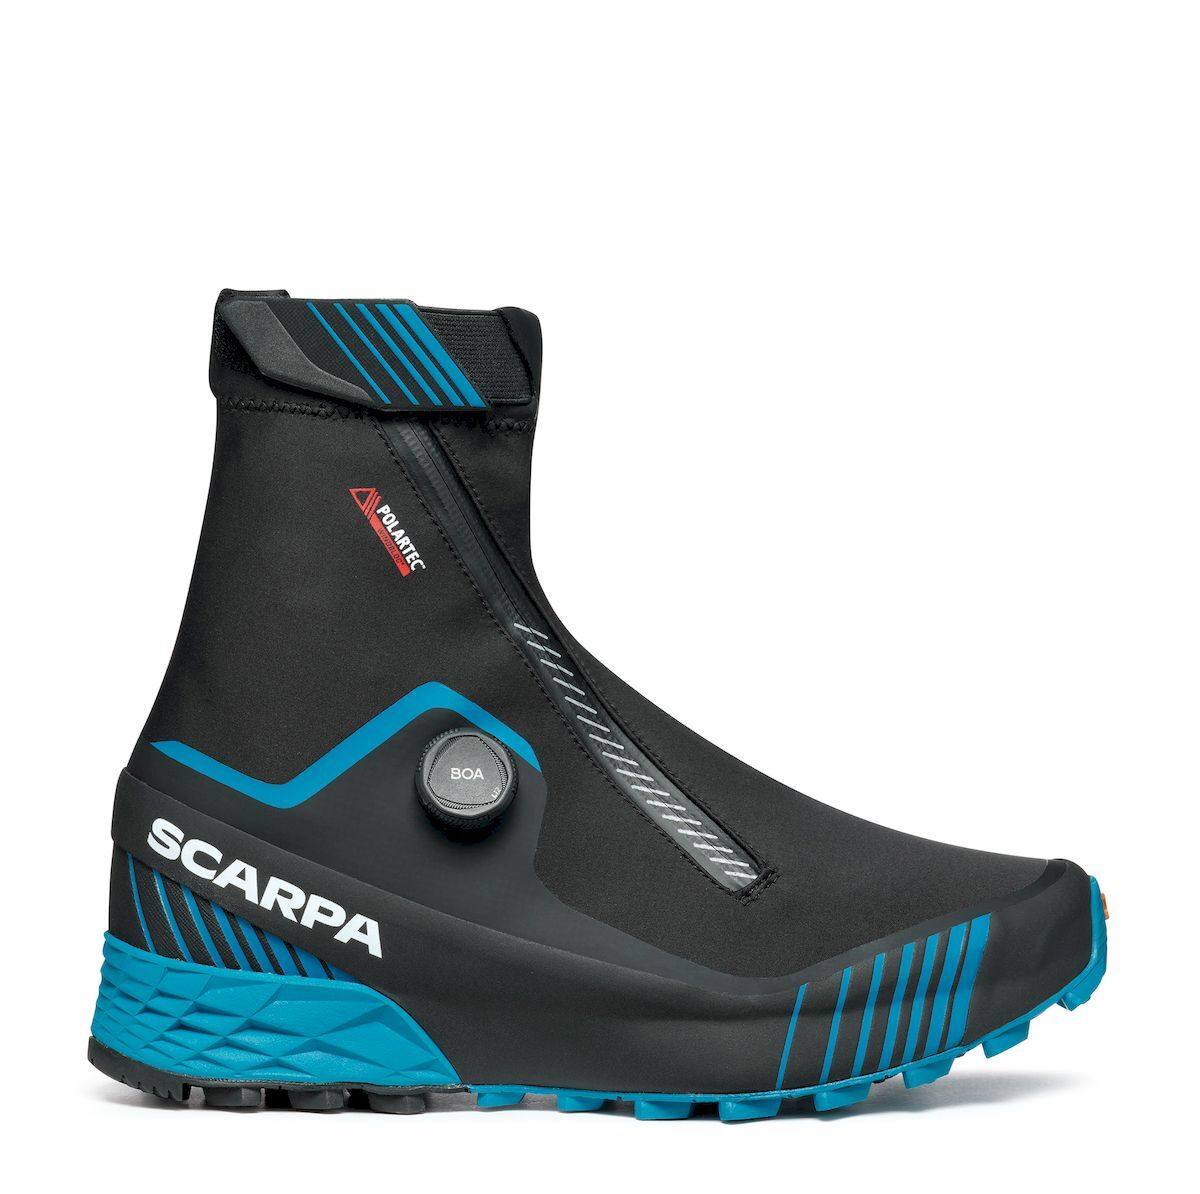 Scarpa Ribelle Run Kalibra G - Trail running shoes - Men's